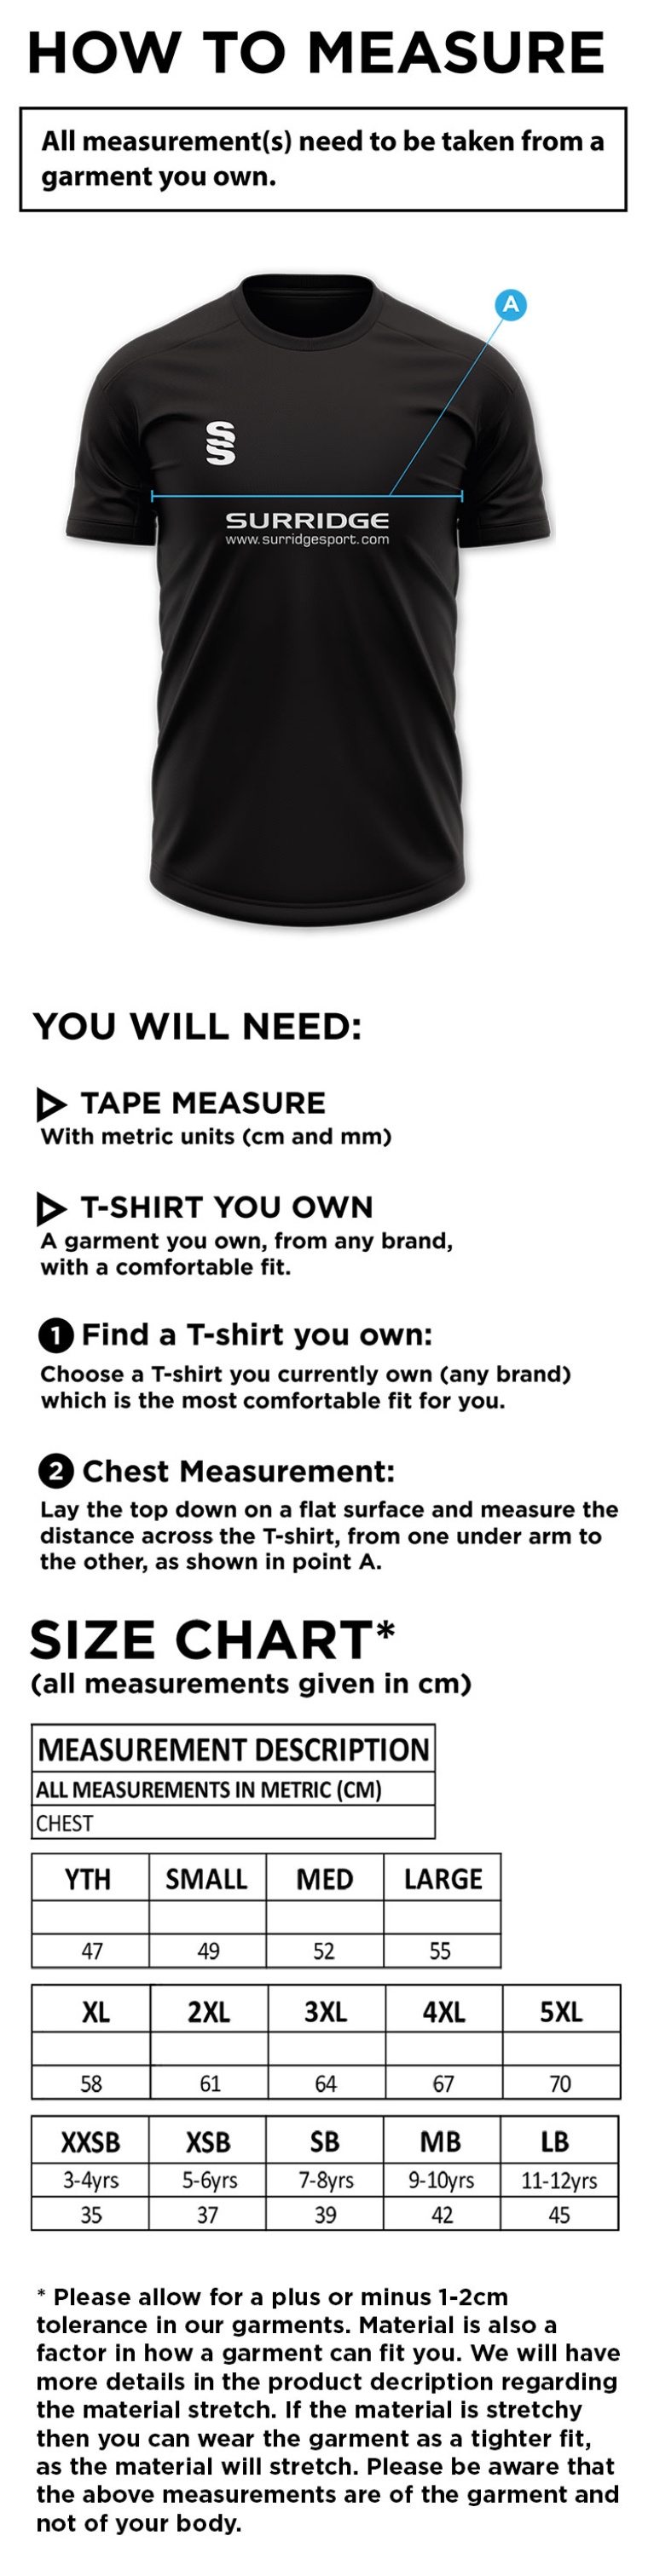 Solihull Municipal CC - Dual polo shirt - Size Guide